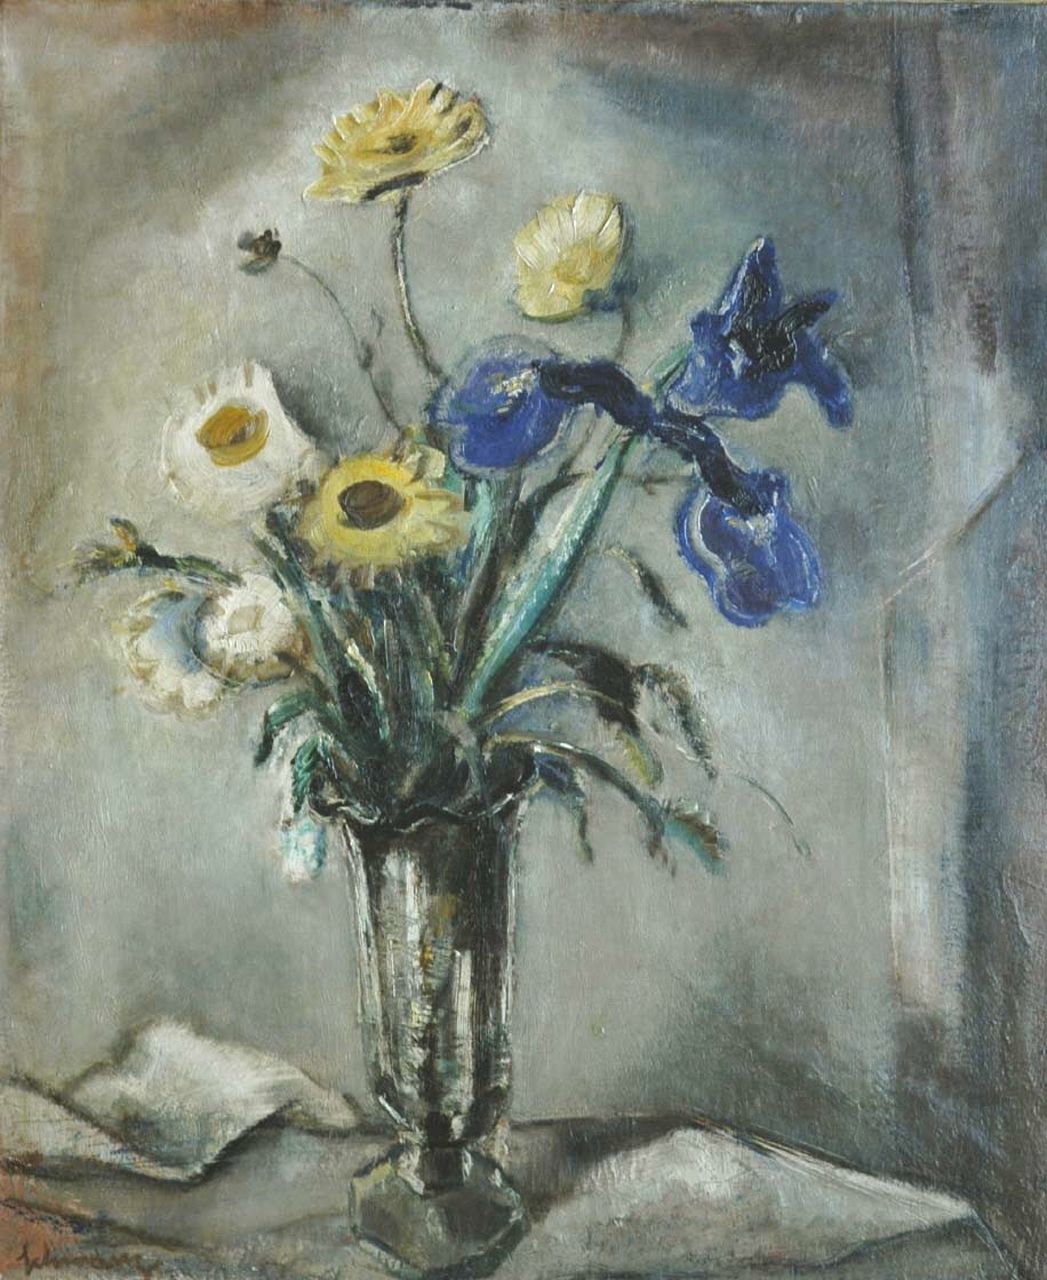 Schwarz S.  | Samuel 'Mommie' Schwarz, Stilleven van tuinbloemen, olieverf op doek 65,0 x 54,8 cm, gesigneerd linksonder